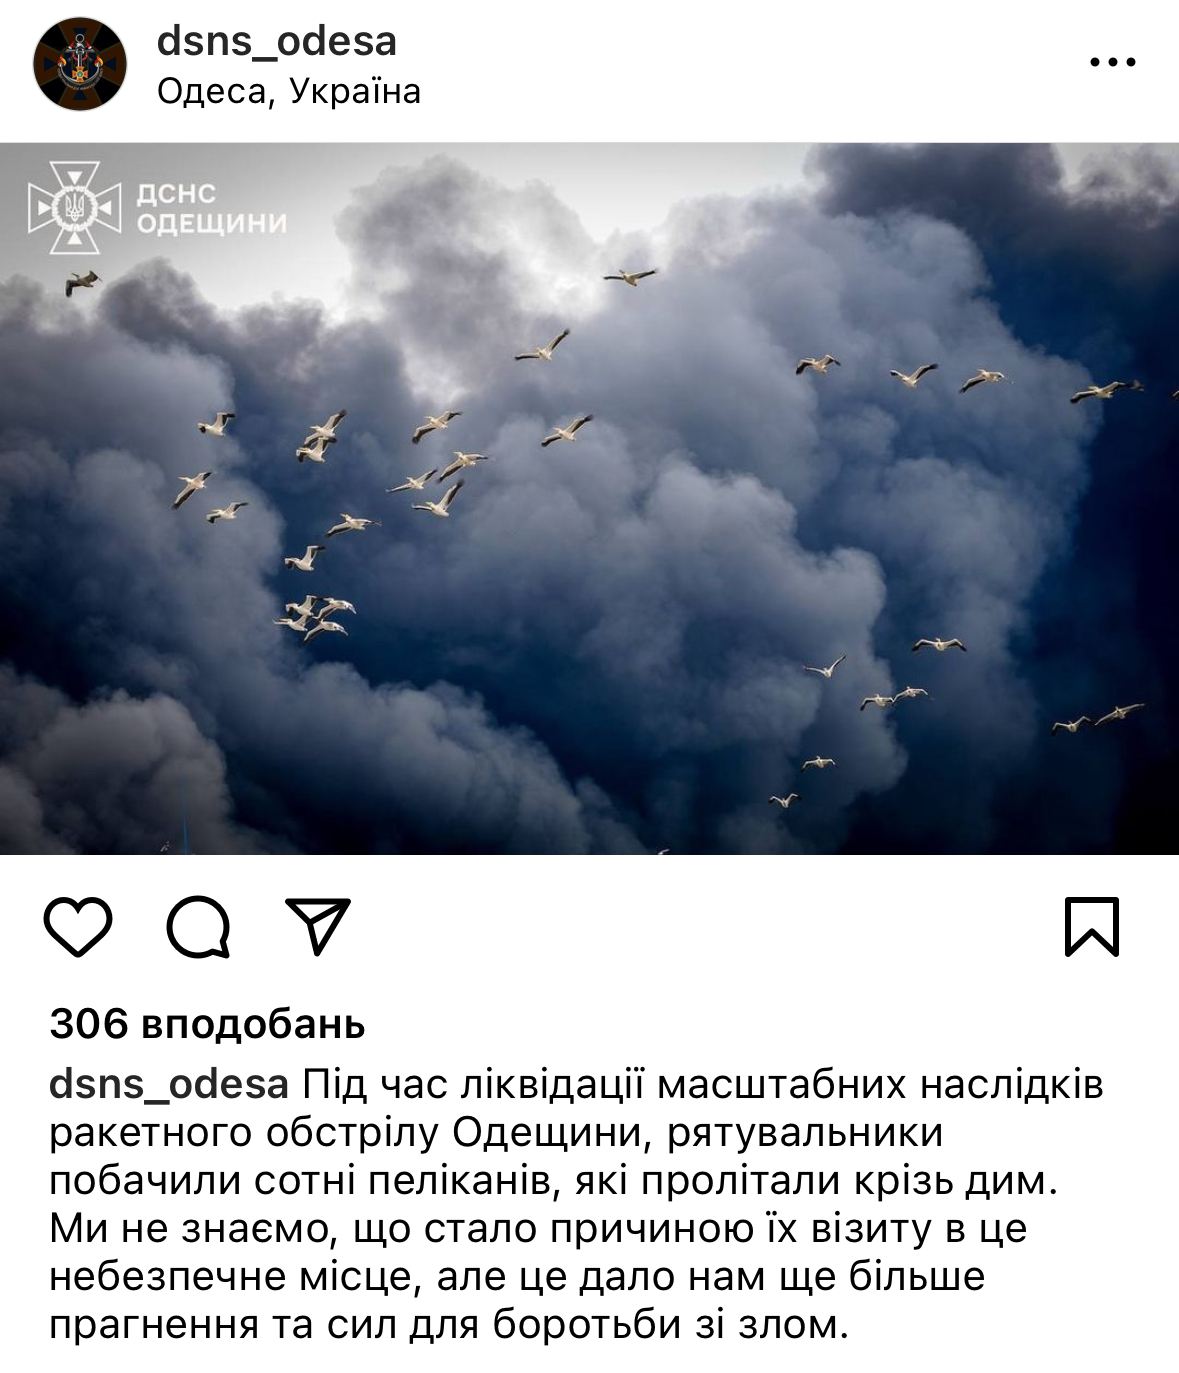 Natura również cierpi z powodu wojny. Zdjęcie pelikanów przelatujących przez dym po ataku rakietowym w regionie Odessy poruszyło sieć